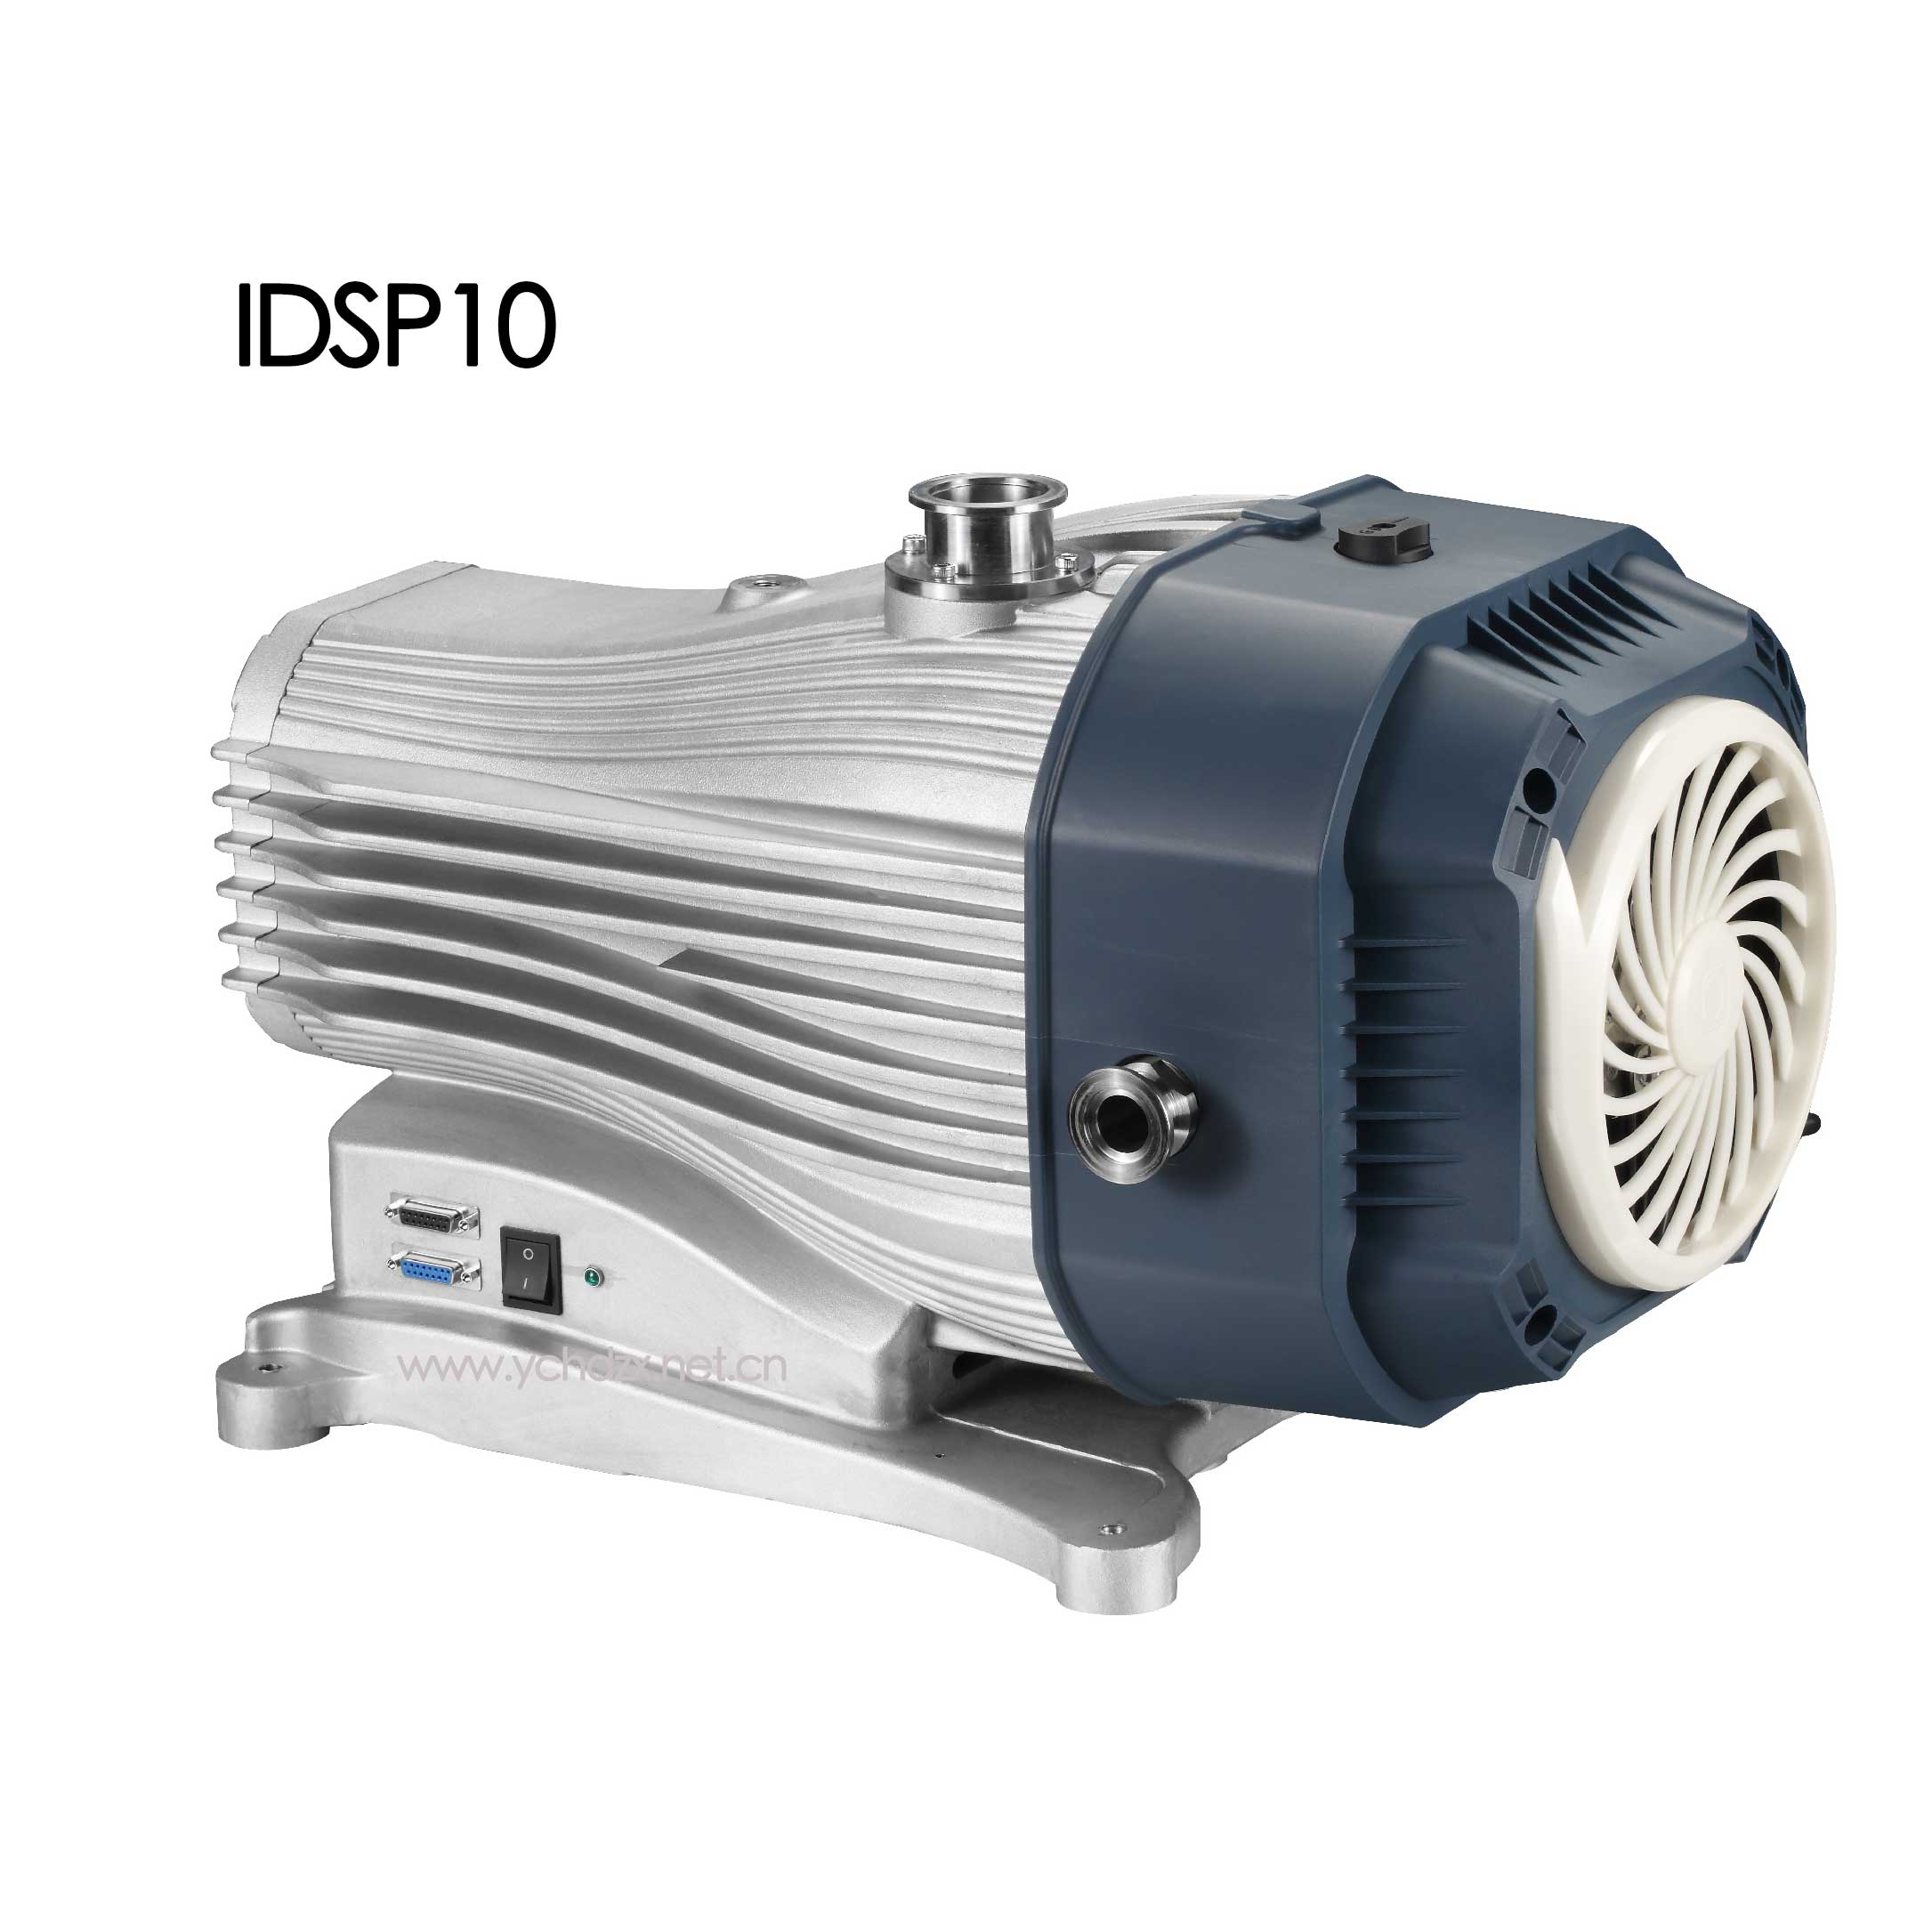 鲍斯干式涡旋真空泵IDSP10参数介绍